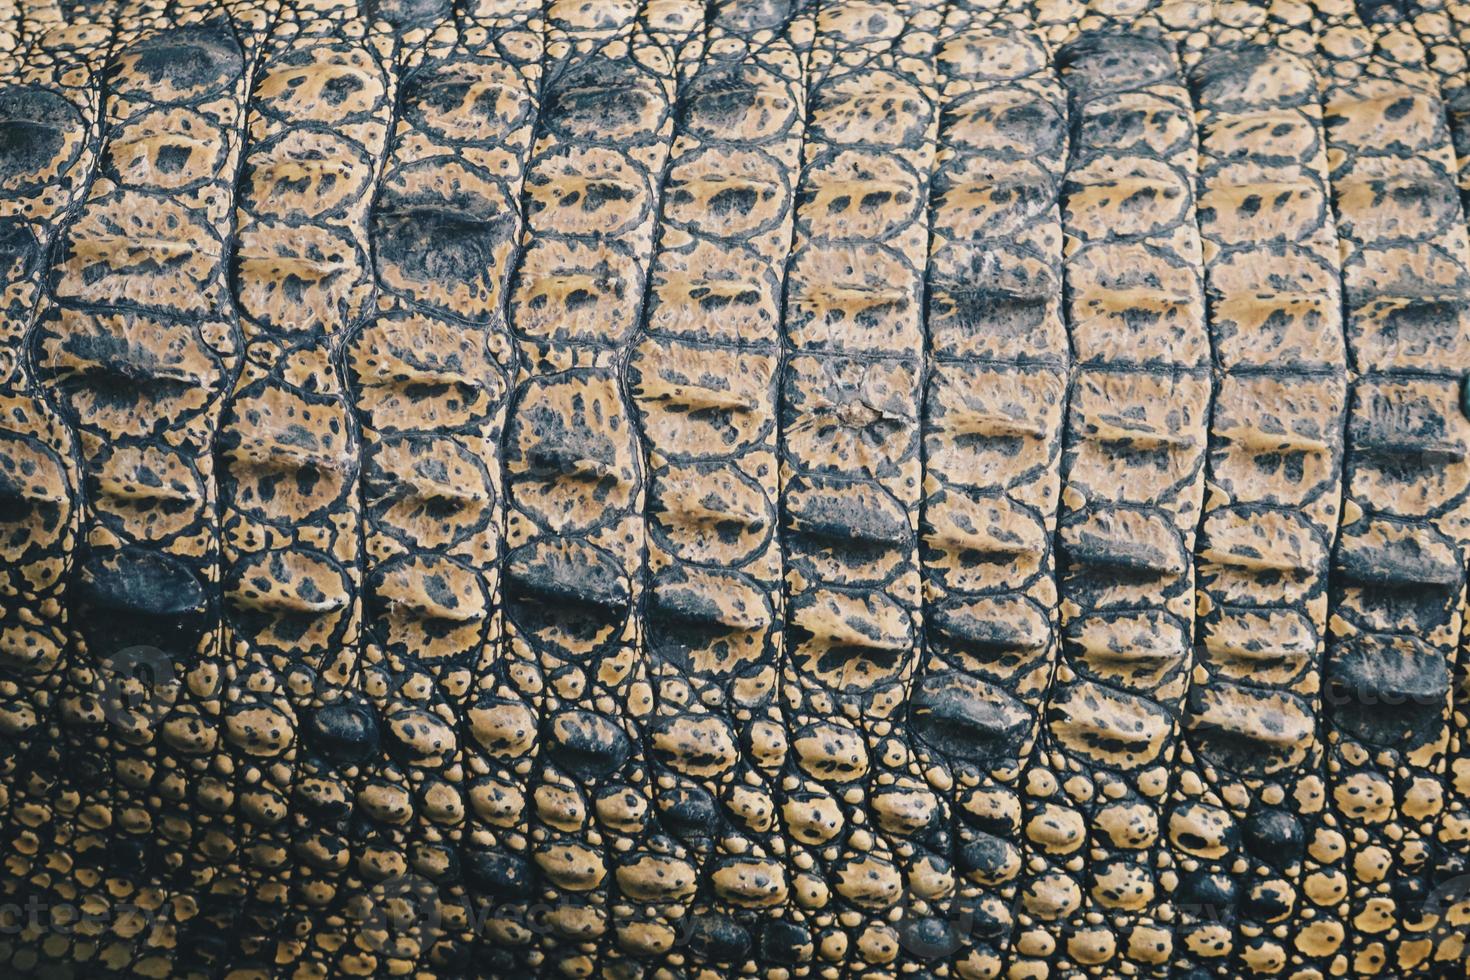 vista dall'alto della pelle superiore del coccodrillo d'acqua salata o della buaya muara o del coccodrillo indo australiano o del coccodrillo mangiatore di uomini. prendere il sole allo zoo della palude. foto